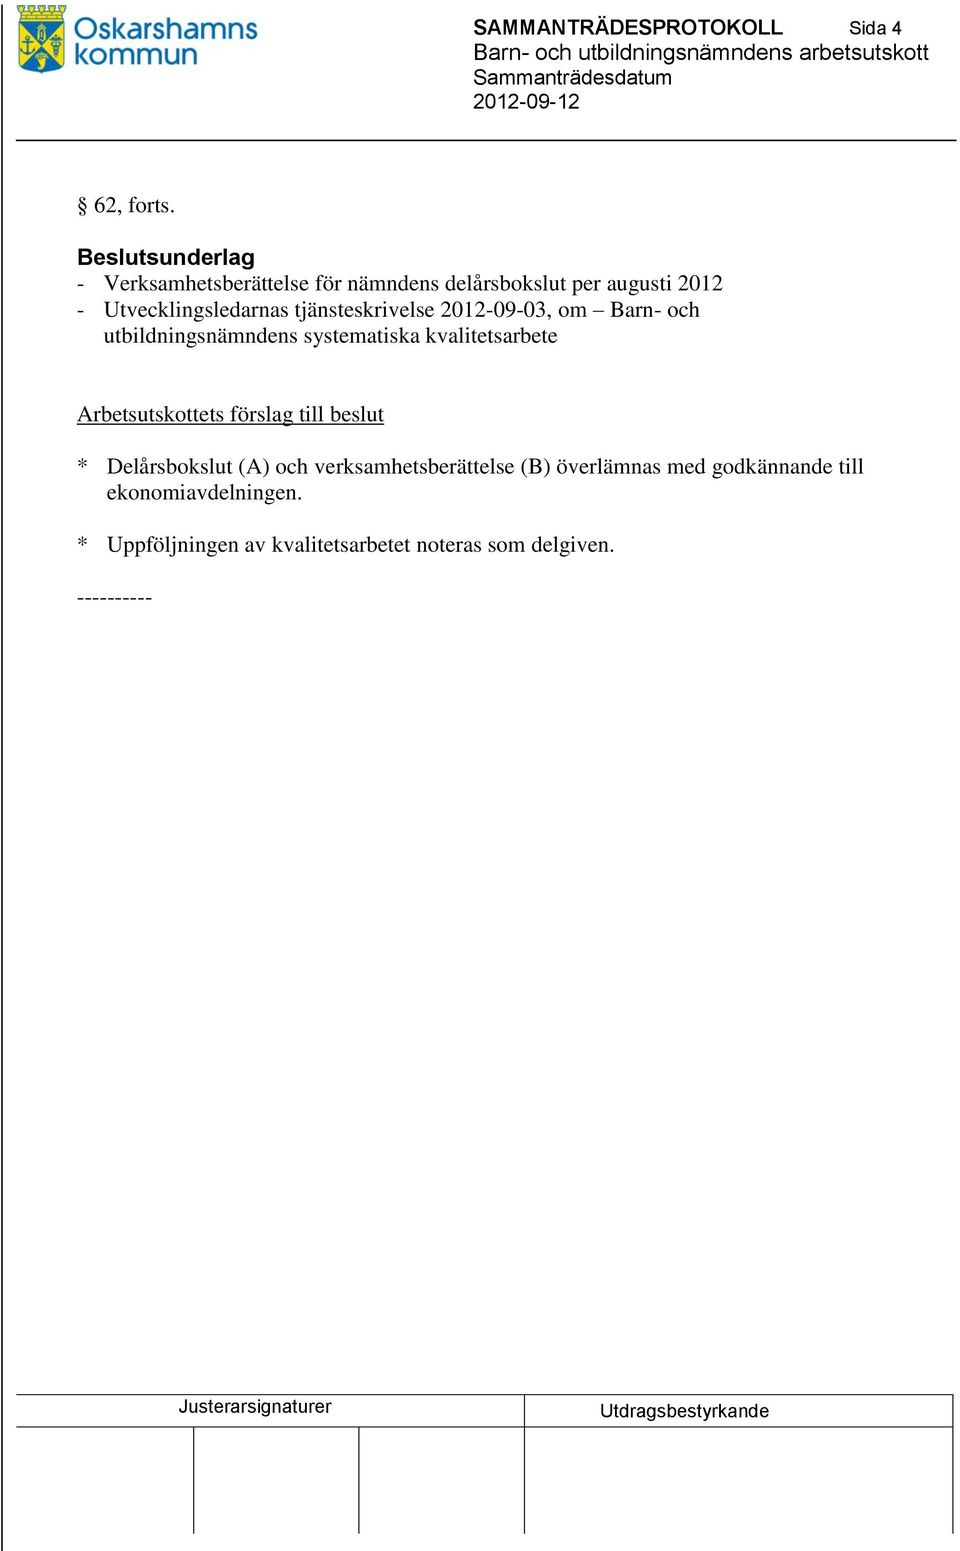 Utvecklingsledarnas tjänsteskrivelse 2012-09-03, om Barn- och utbildningsnämndens systematiska